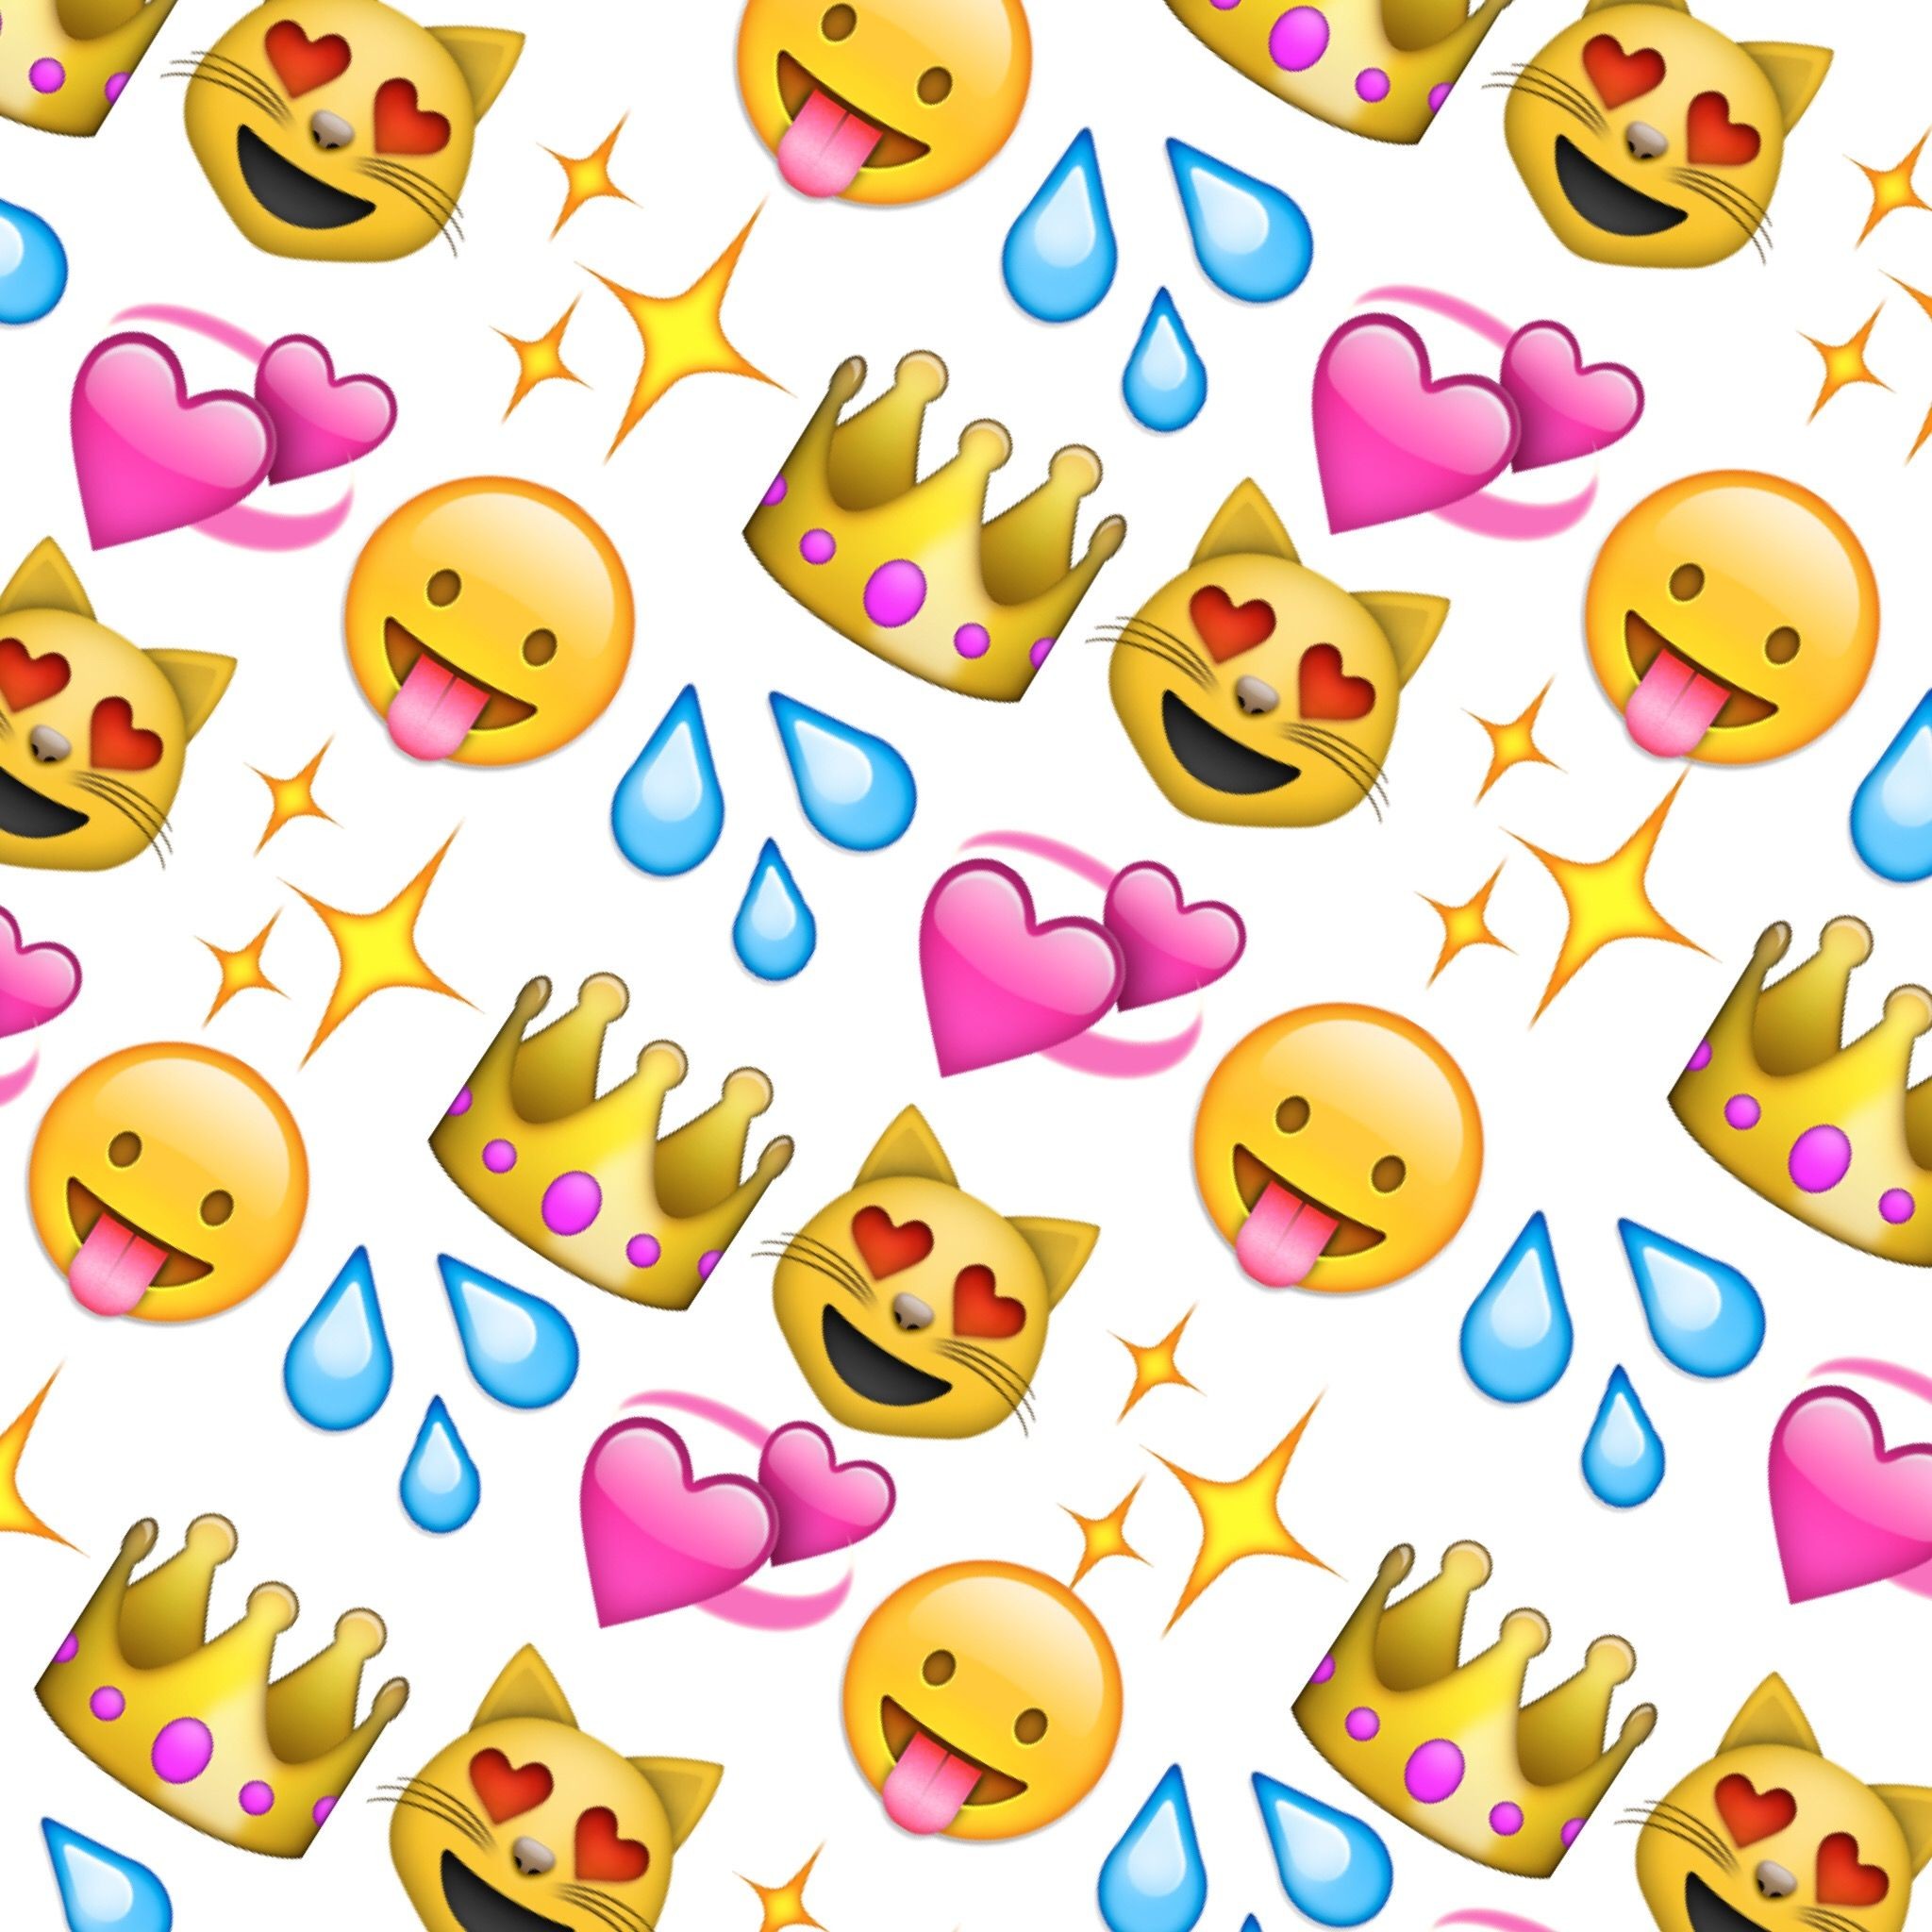 Emoji Wallpapers ·① WallpaperTag